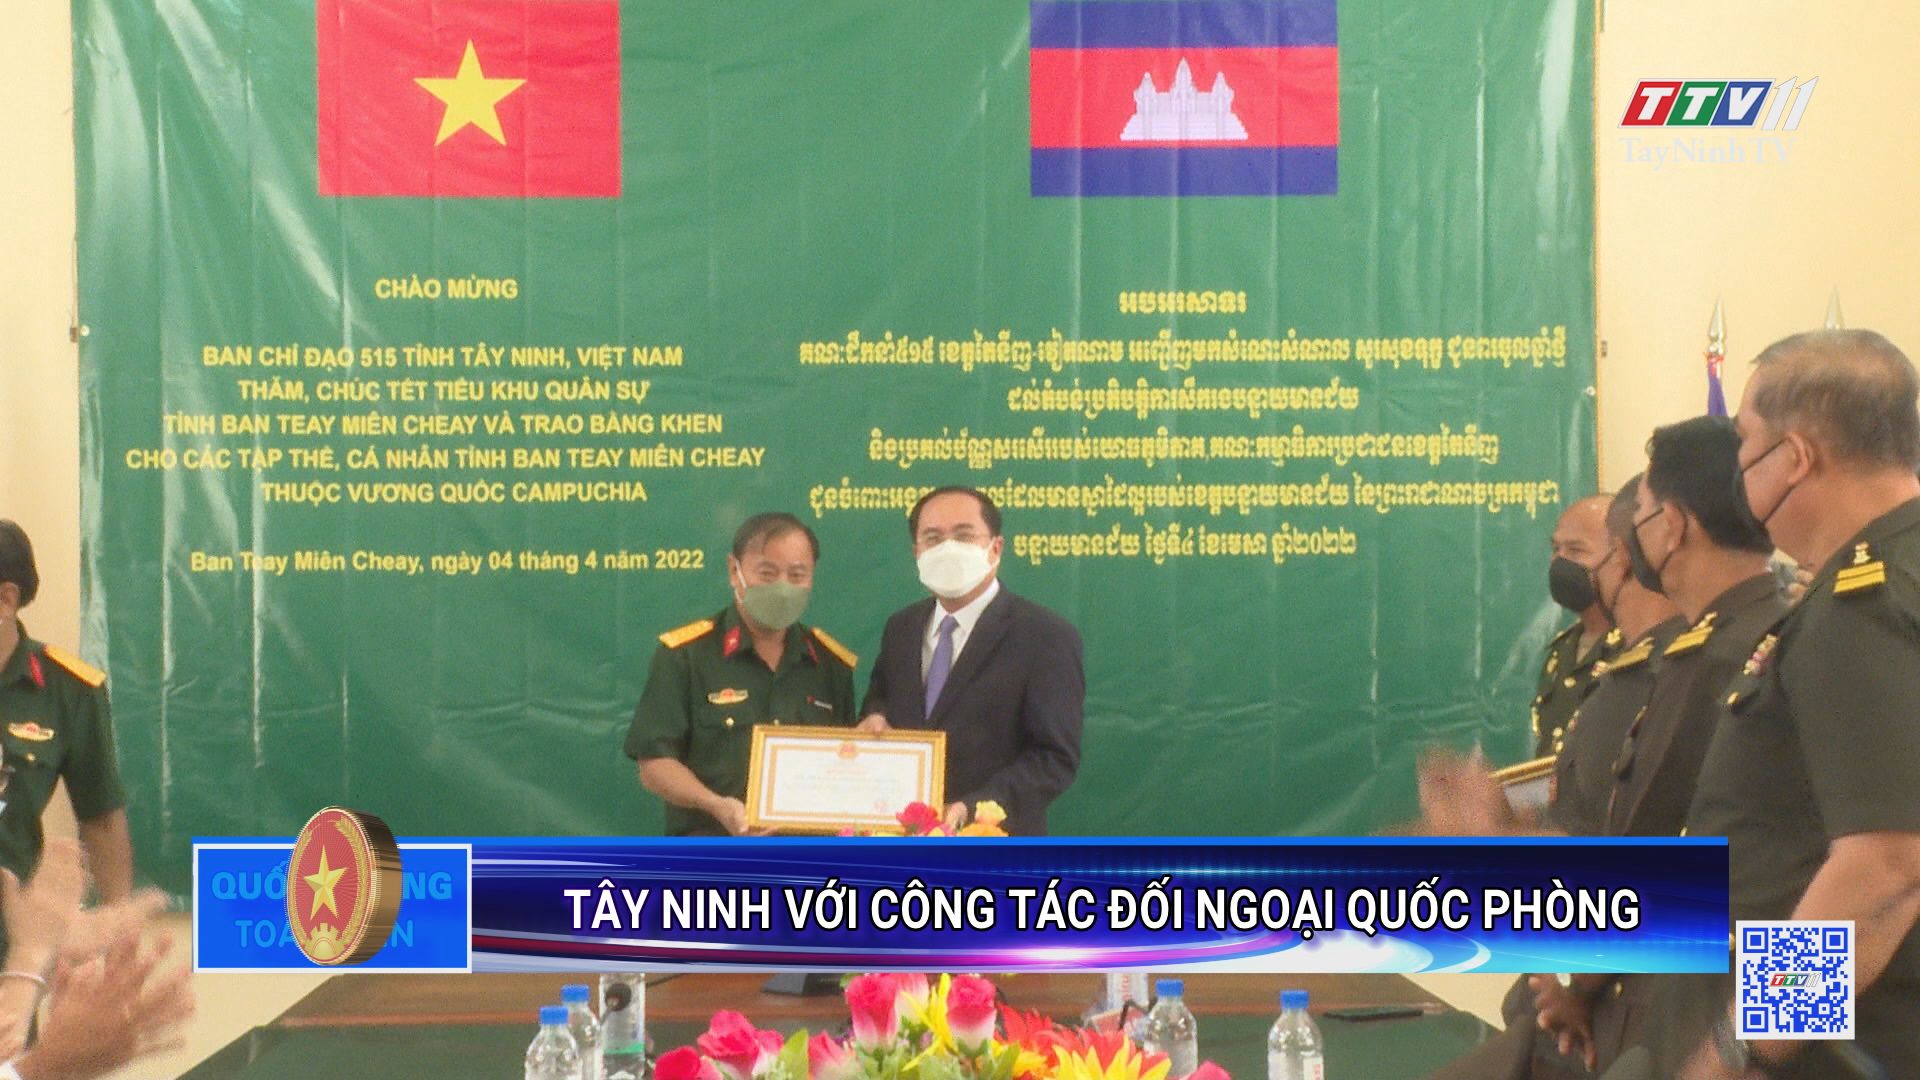 Tây Ninh với công tác đối ngoại quốc phòng | Quốc phòng toàn dân | TayNinhTV